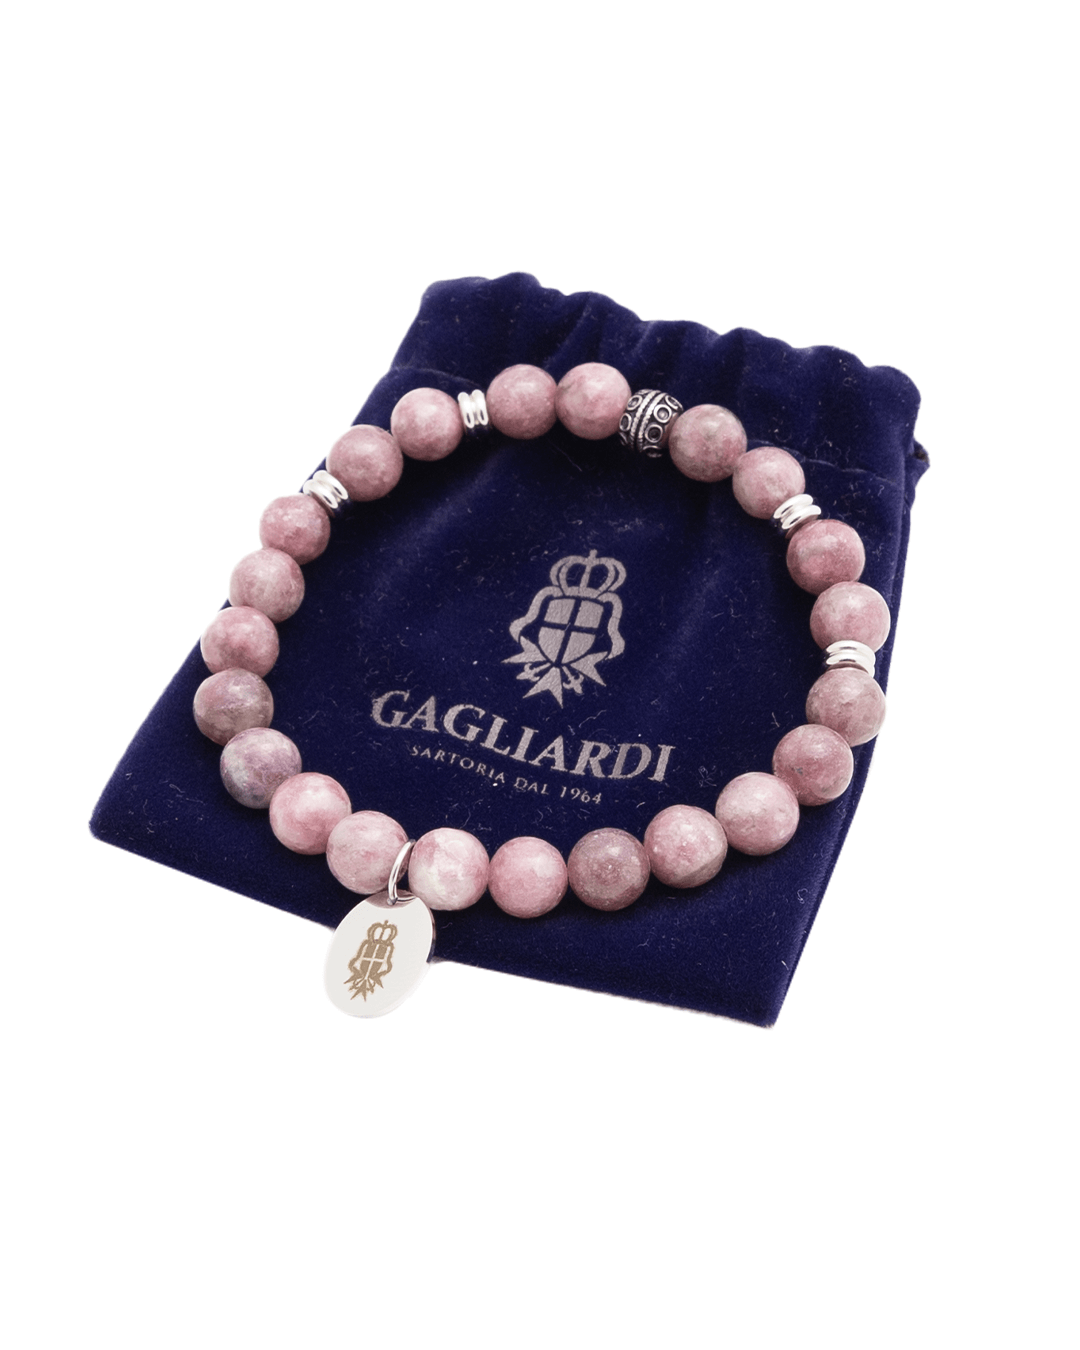 Gagliardi Bracelets Gagliardi Burgundy Gemstone Bead Bracelet